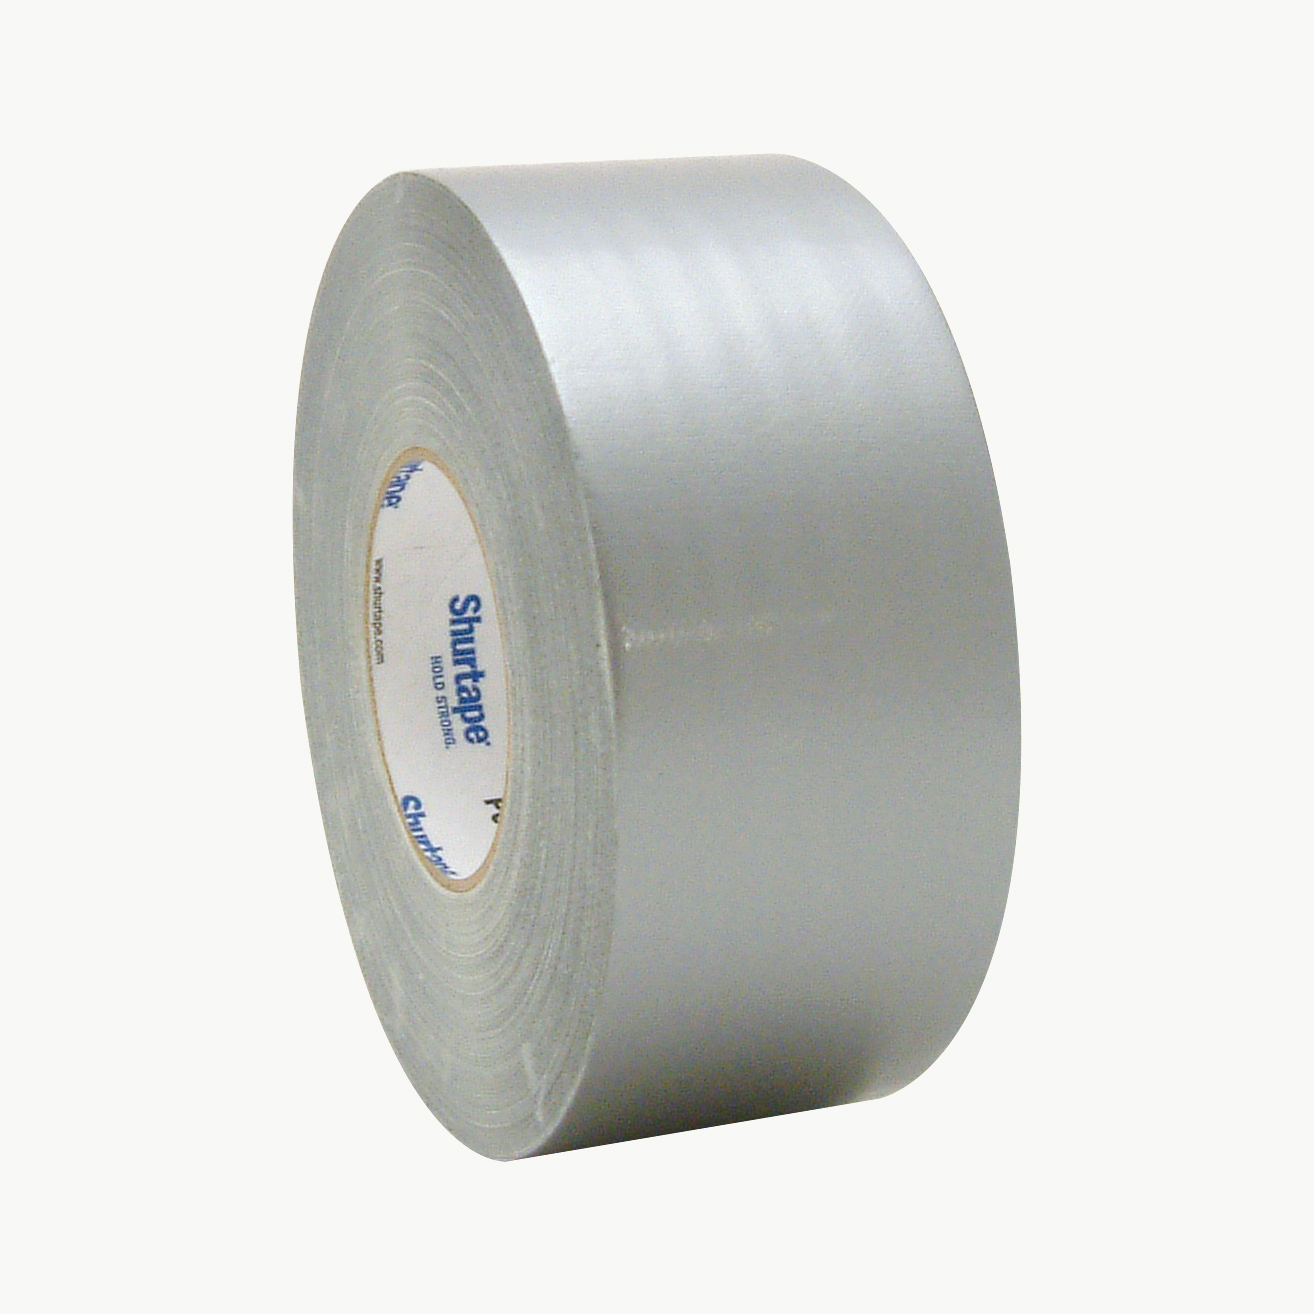 Shurtape Premium Grade Duct Tape (PC-657)